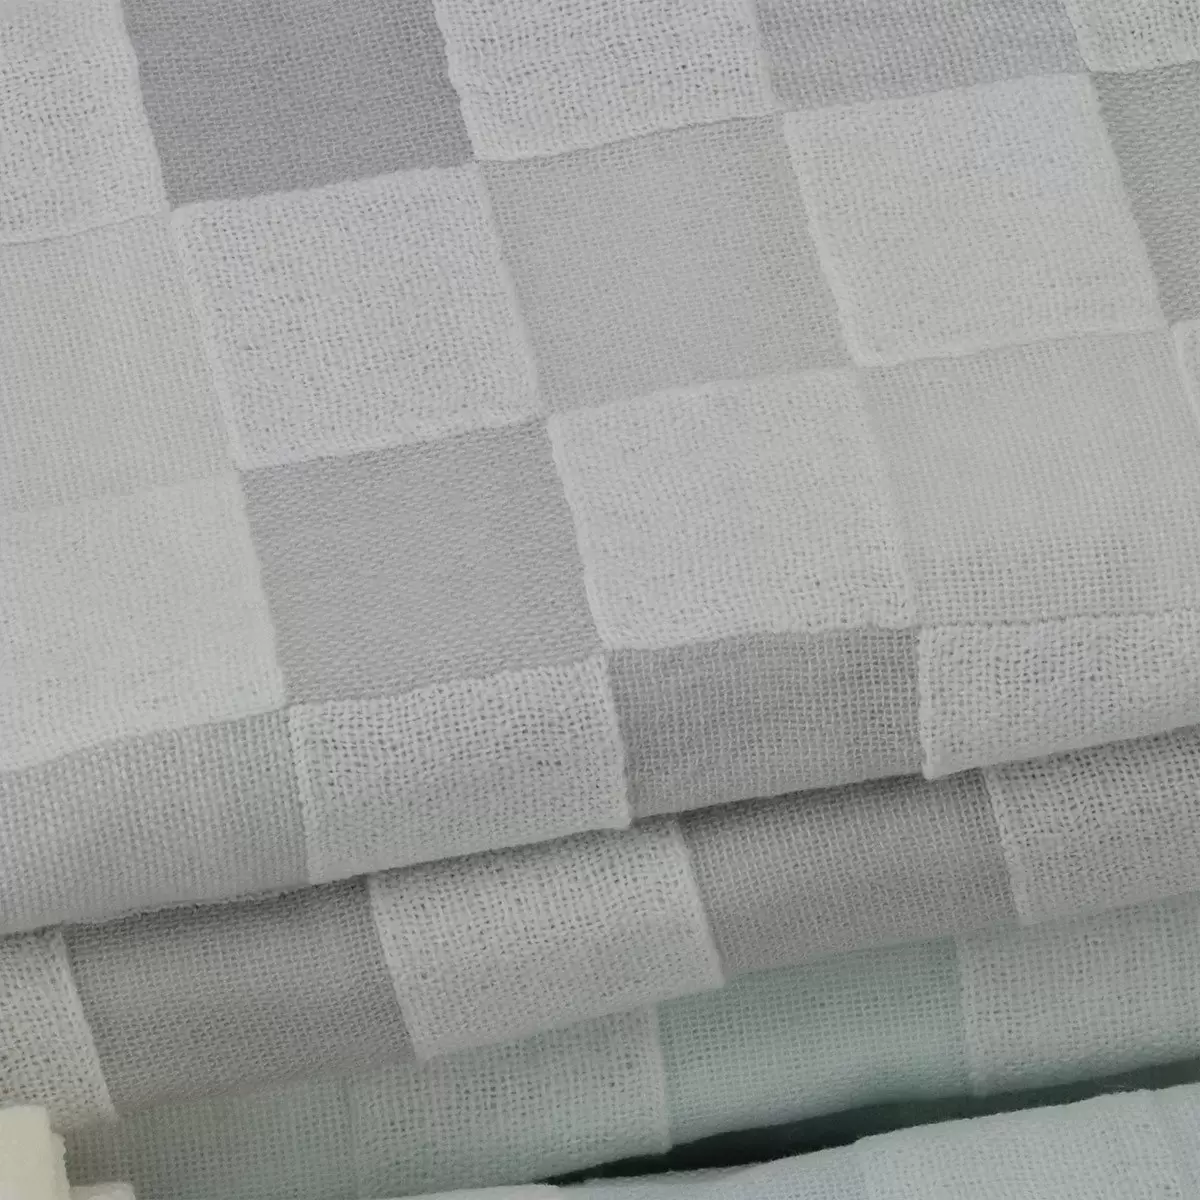 Gemini 雙星毛巾彩色方格雙層紗布浴巾 2入組 66公分 X 137公分 藍 + 灰